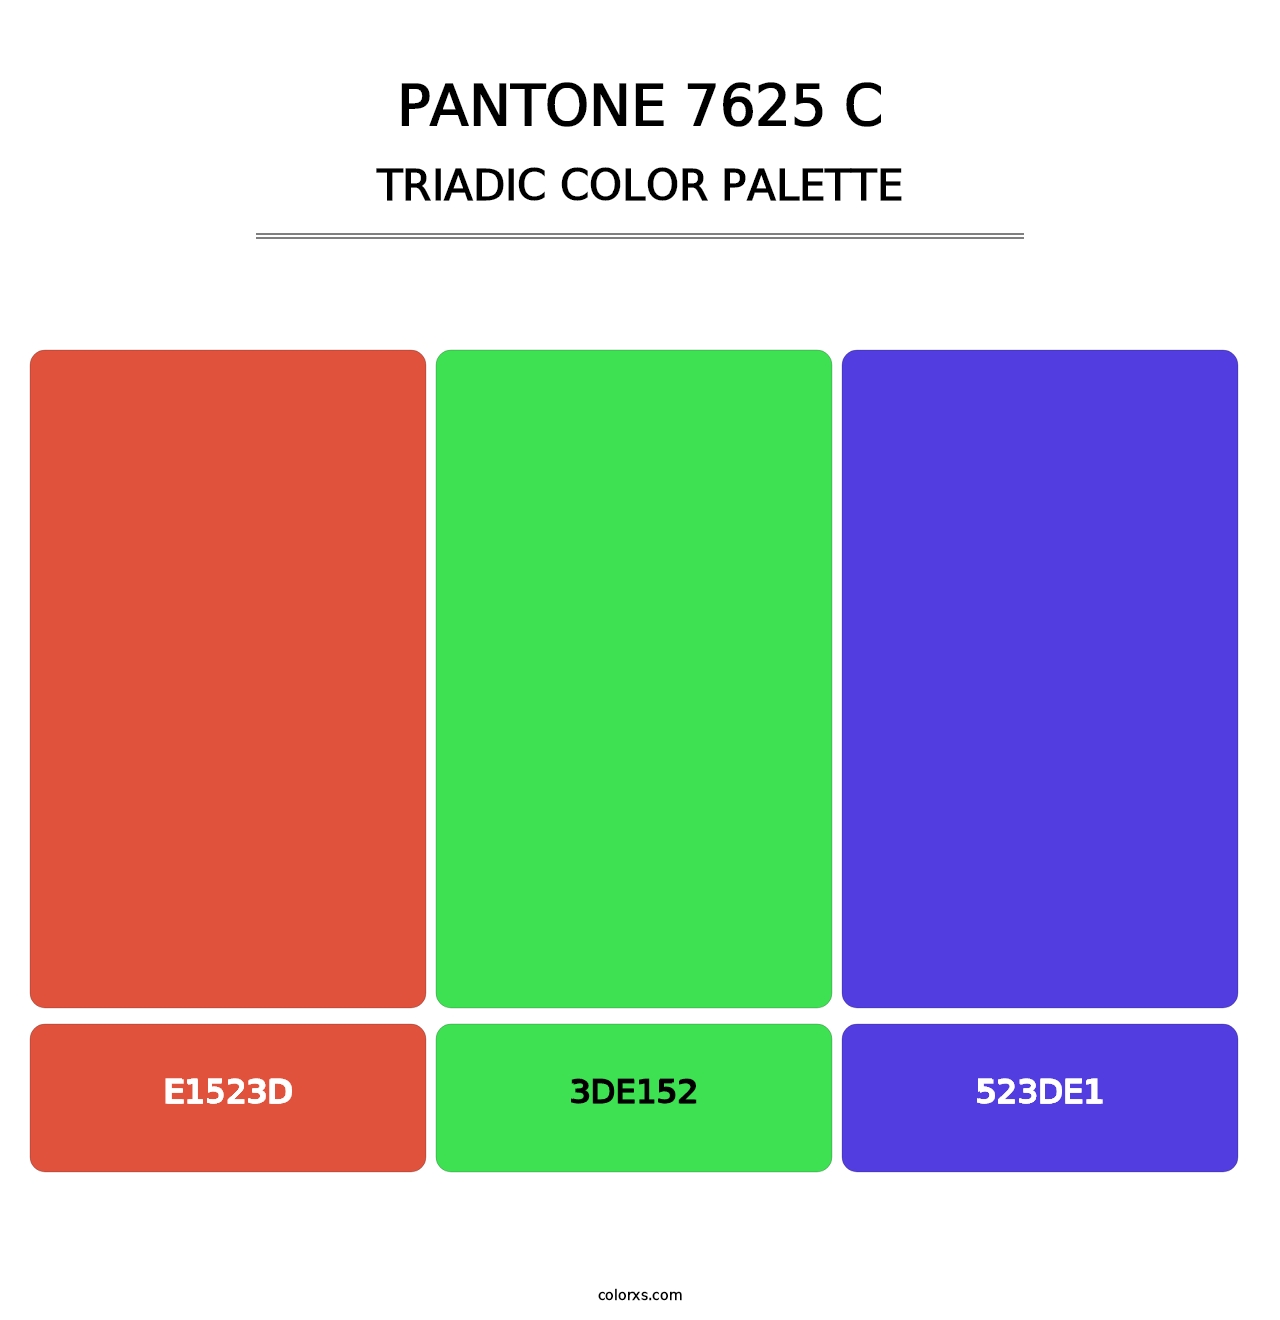 PANTONE 7625 C - Triadic Color Palette